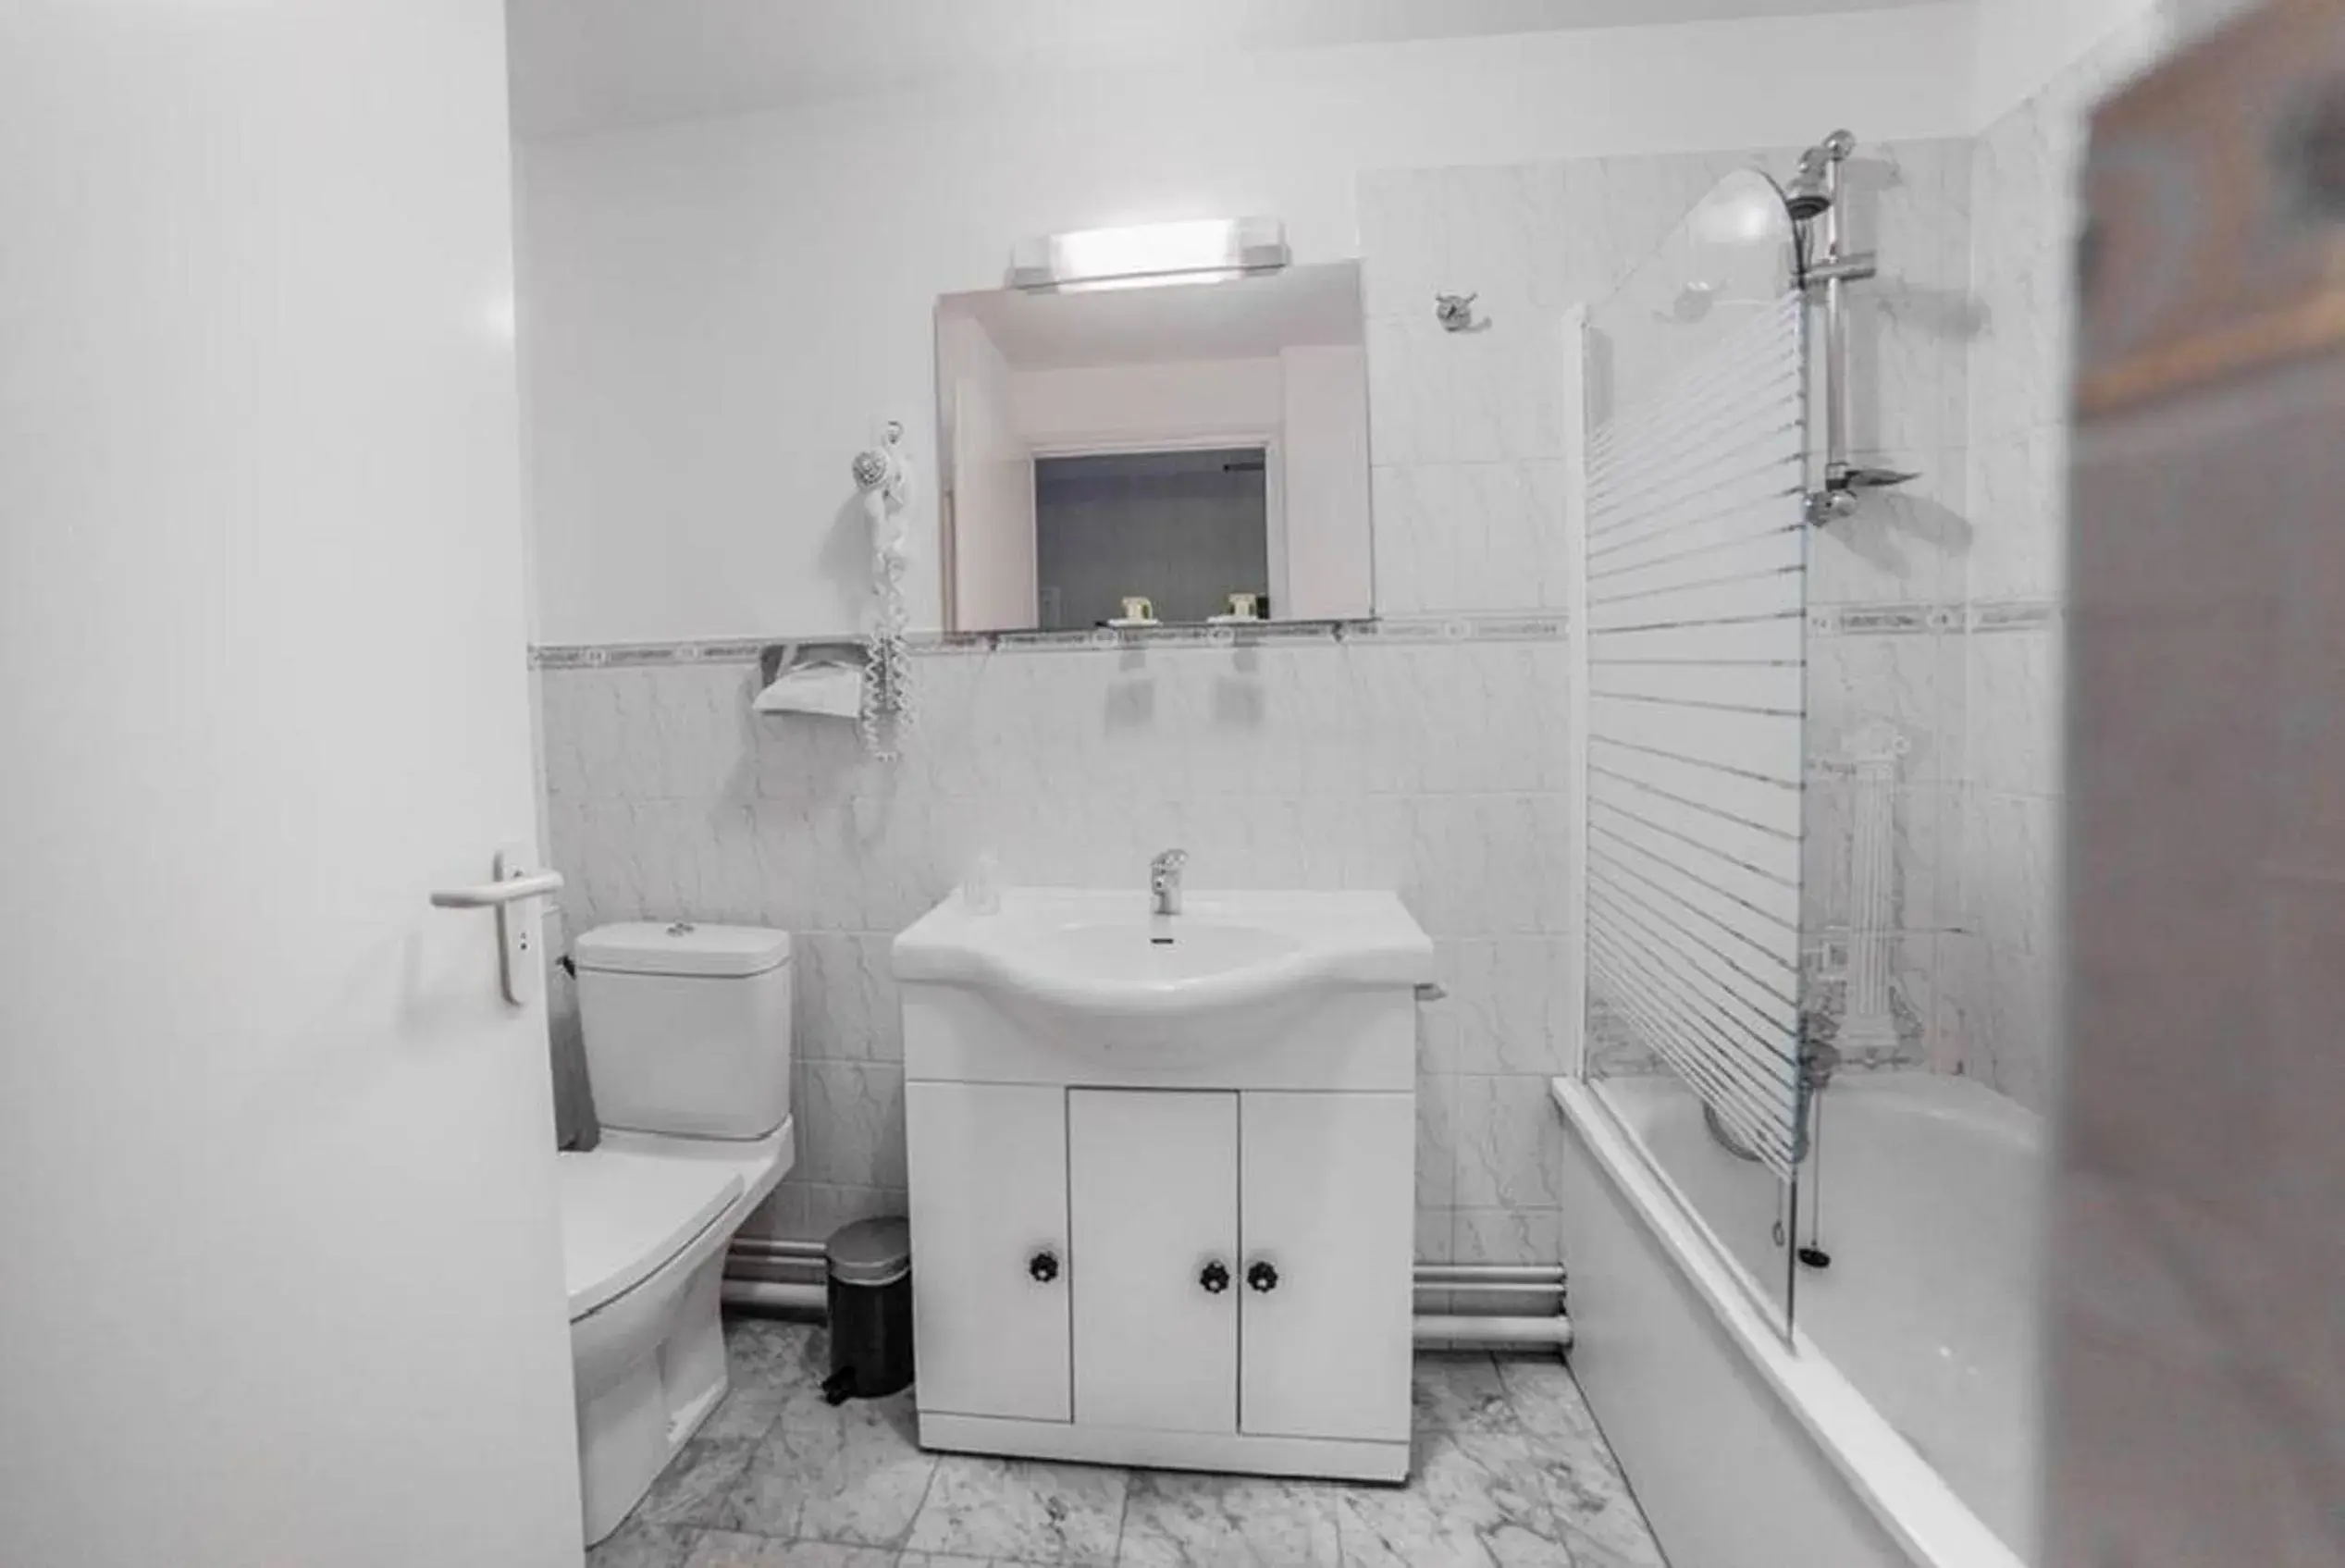 Photo of the whole room, Bathroom in Logis Les Hauts de Montreuil / Le Patio